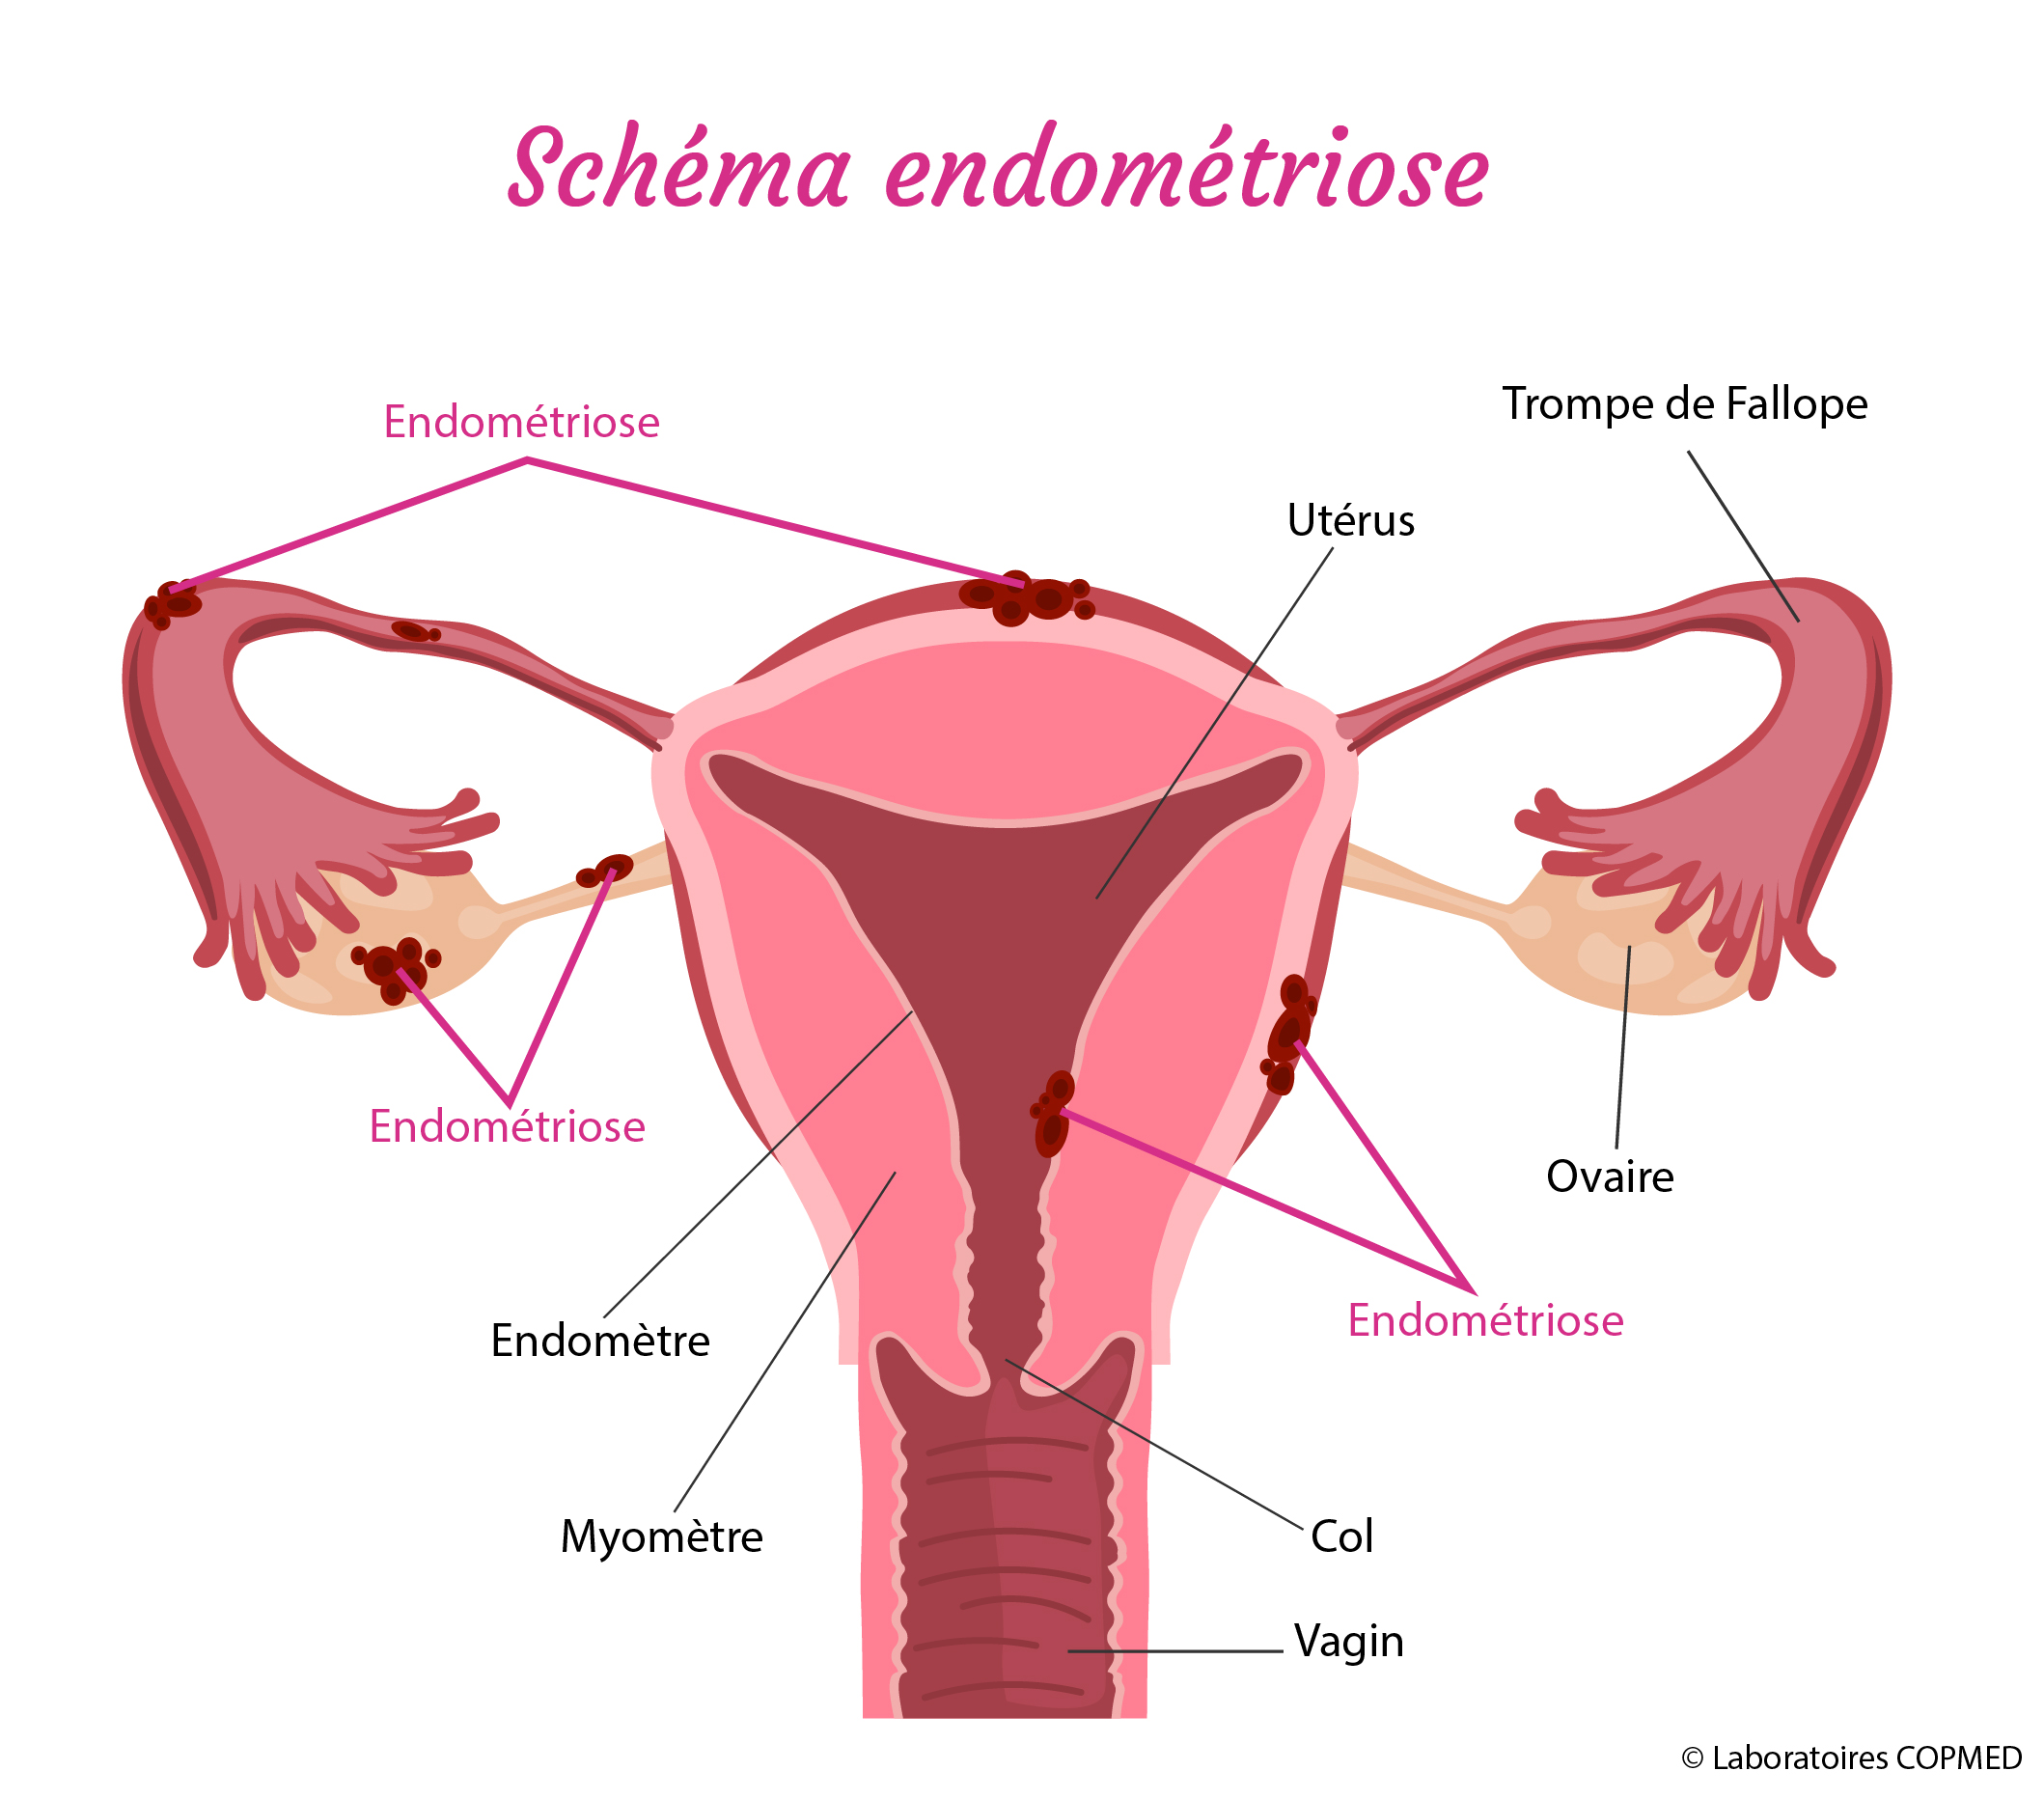 Schema endometriose